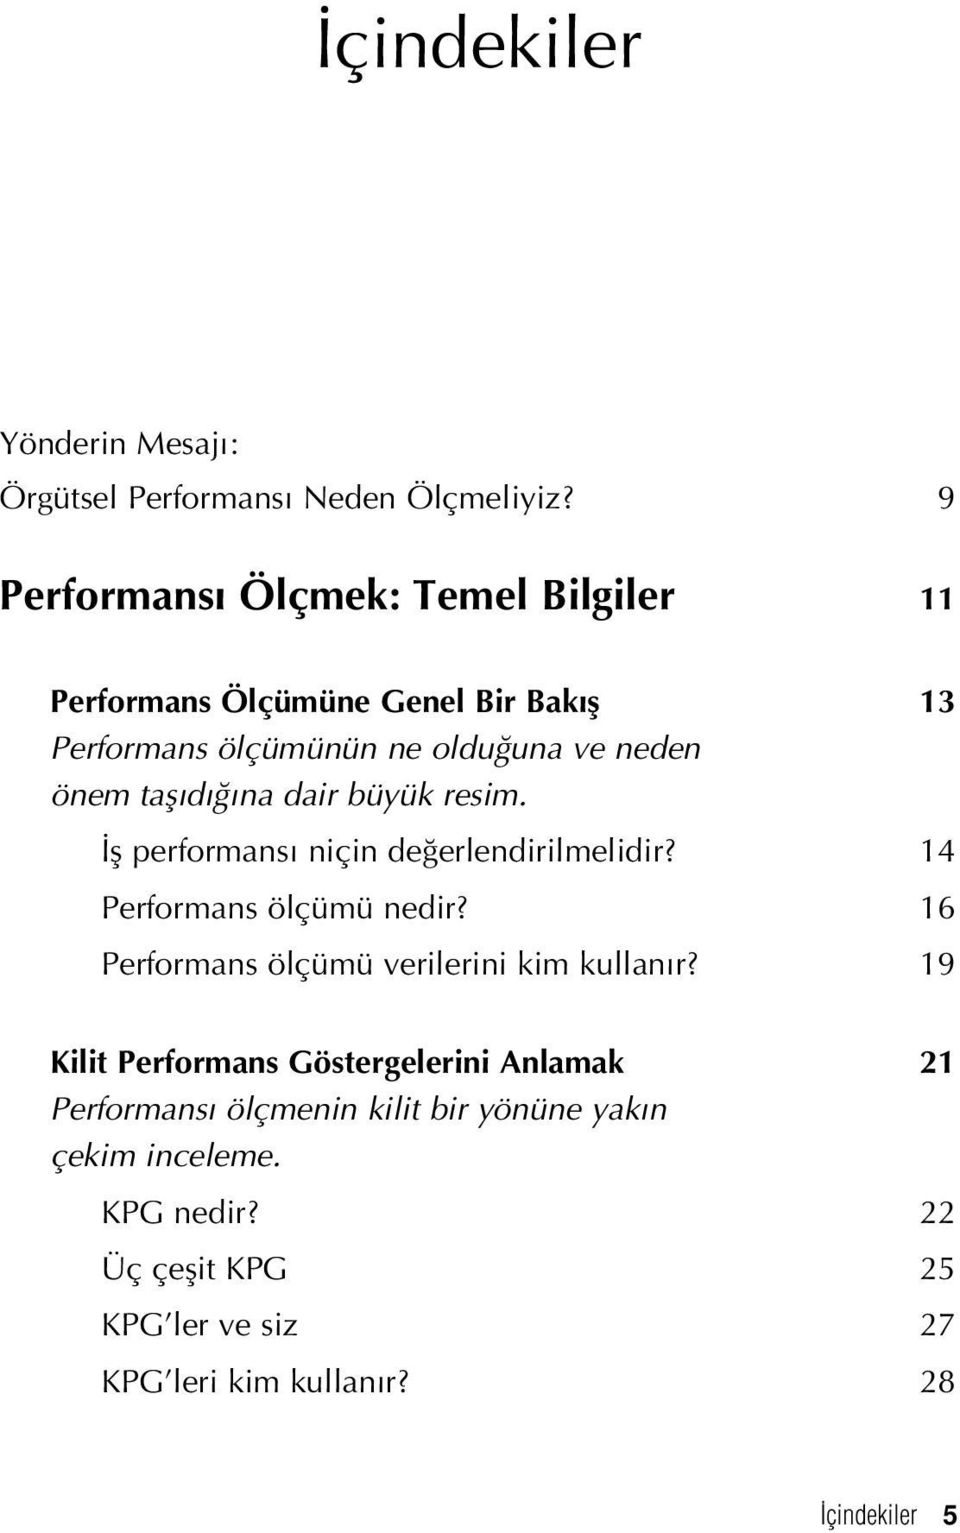 d na dair büyük resim. fl performans niçin de erlendirilmelidir? 14 Performans ölçümü nedir?